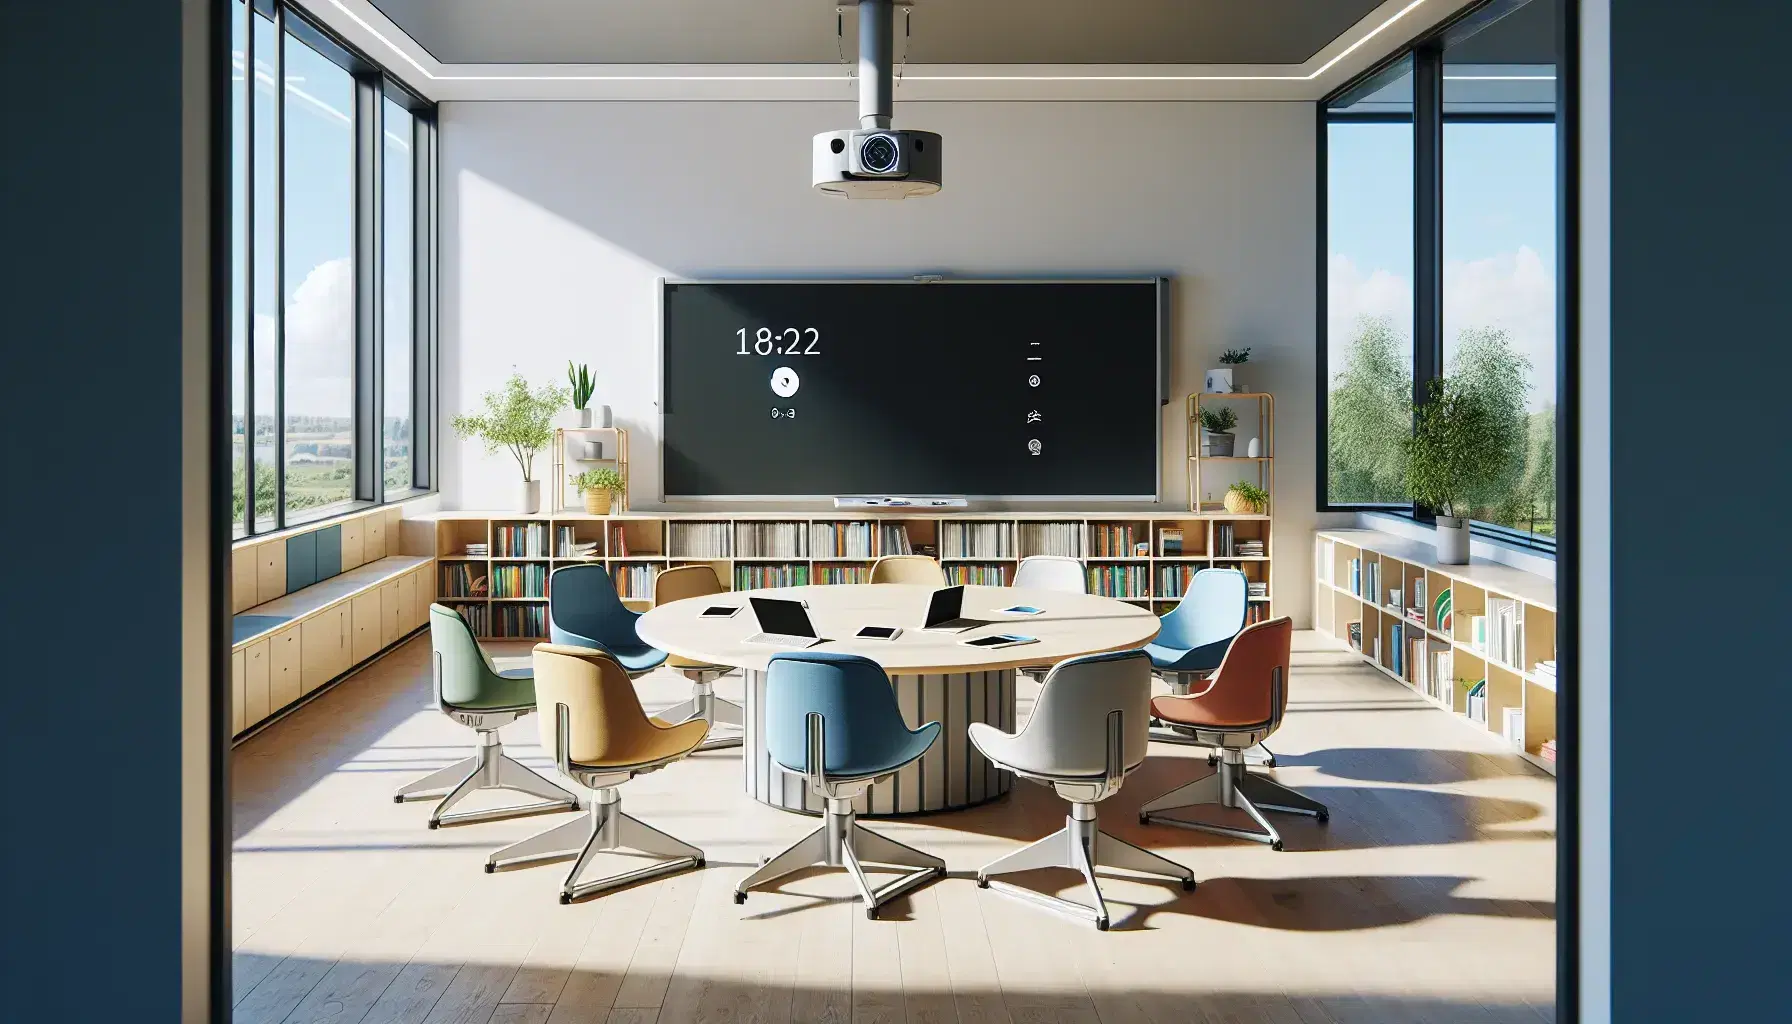 Aula moderna y luminosa con mesa redonda, sillas ergonómicas de colores, dispositivos electrónicos, pizarra blanca, proyector digital y estantería con libros.